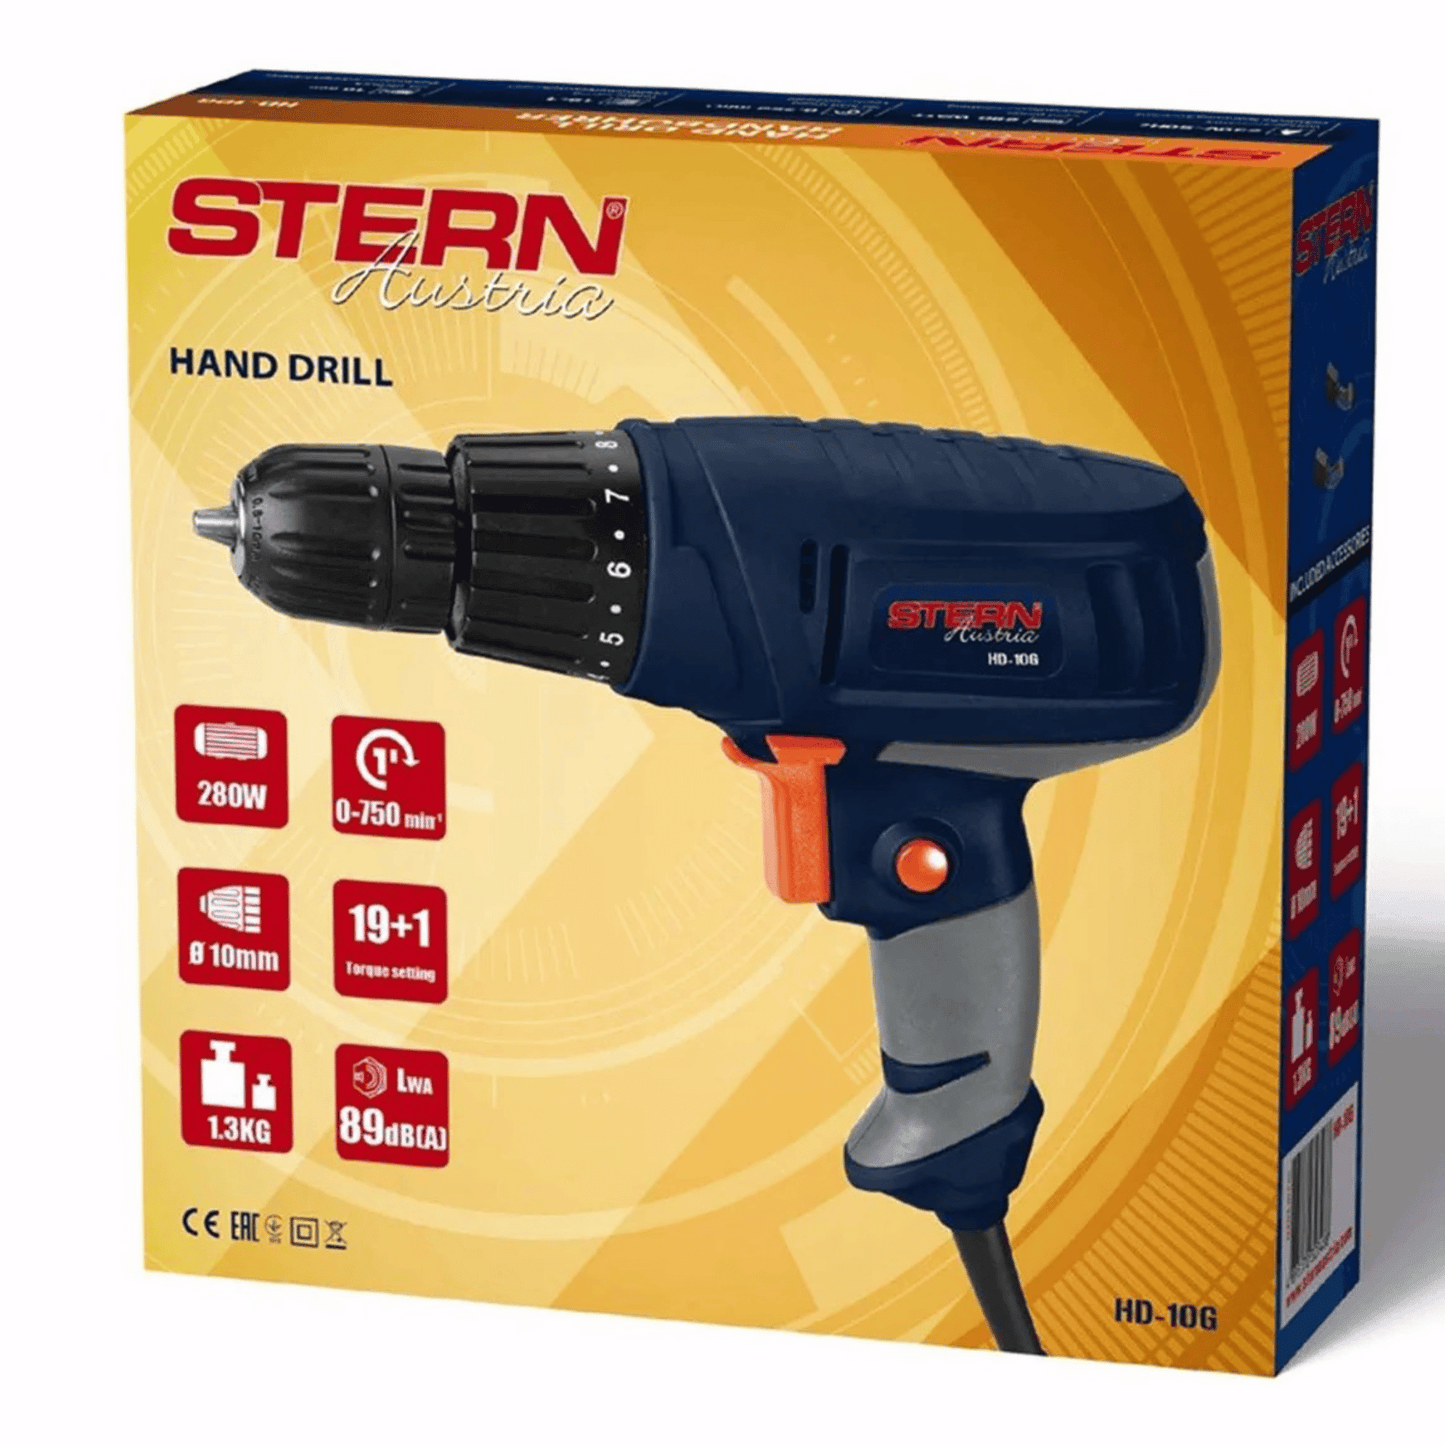 Stern Austria - Drill - HD10G